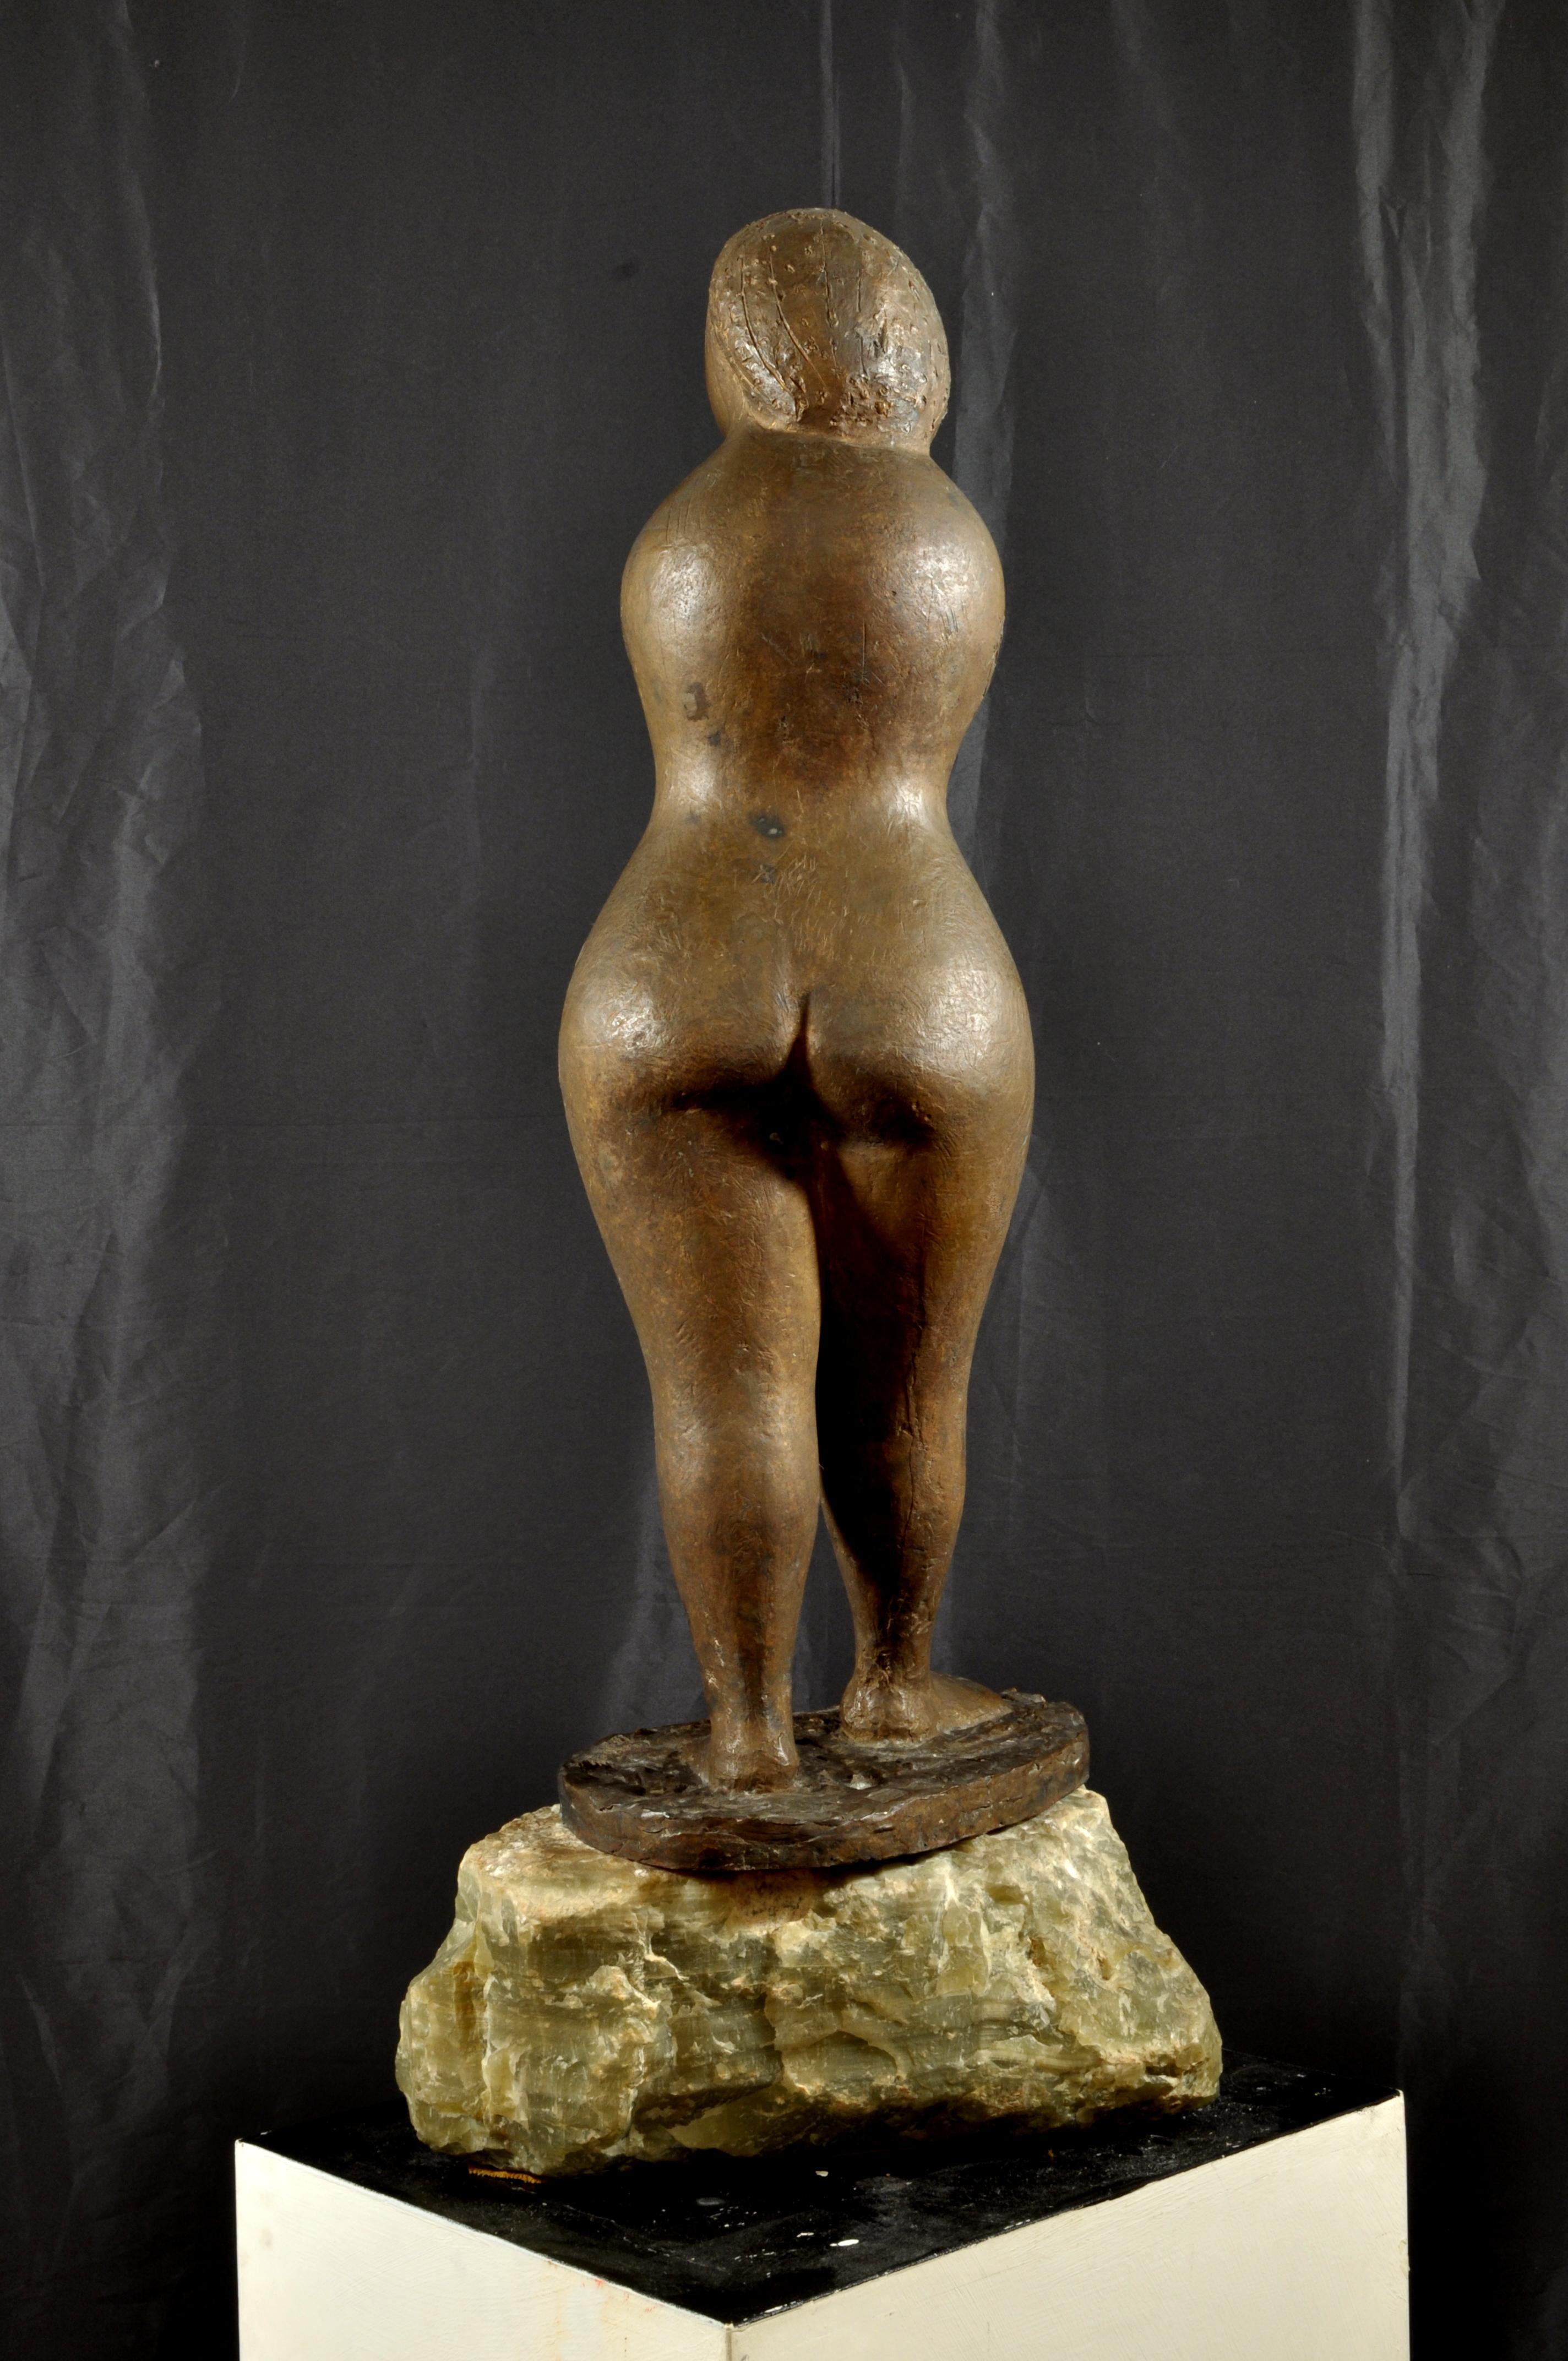 
CARMELO CAPPELLO
(Ragusa, 1912 - Mailand, 1996)
La birichina (Das schelmische Mädchen), 1949
Bronze, Höhe 96cm

Einzigartiges Stück, signiert und datiert auf dem Sockel 